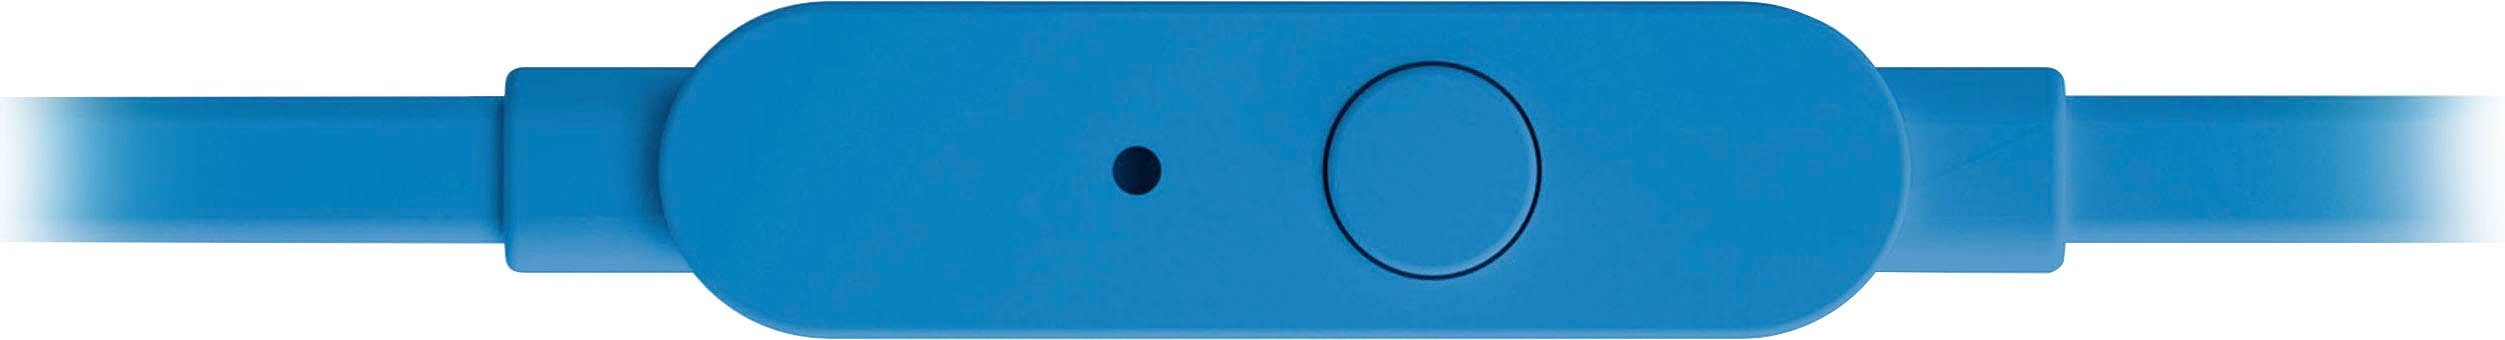 T110 In-Ear-Kopfhörer blau JBL